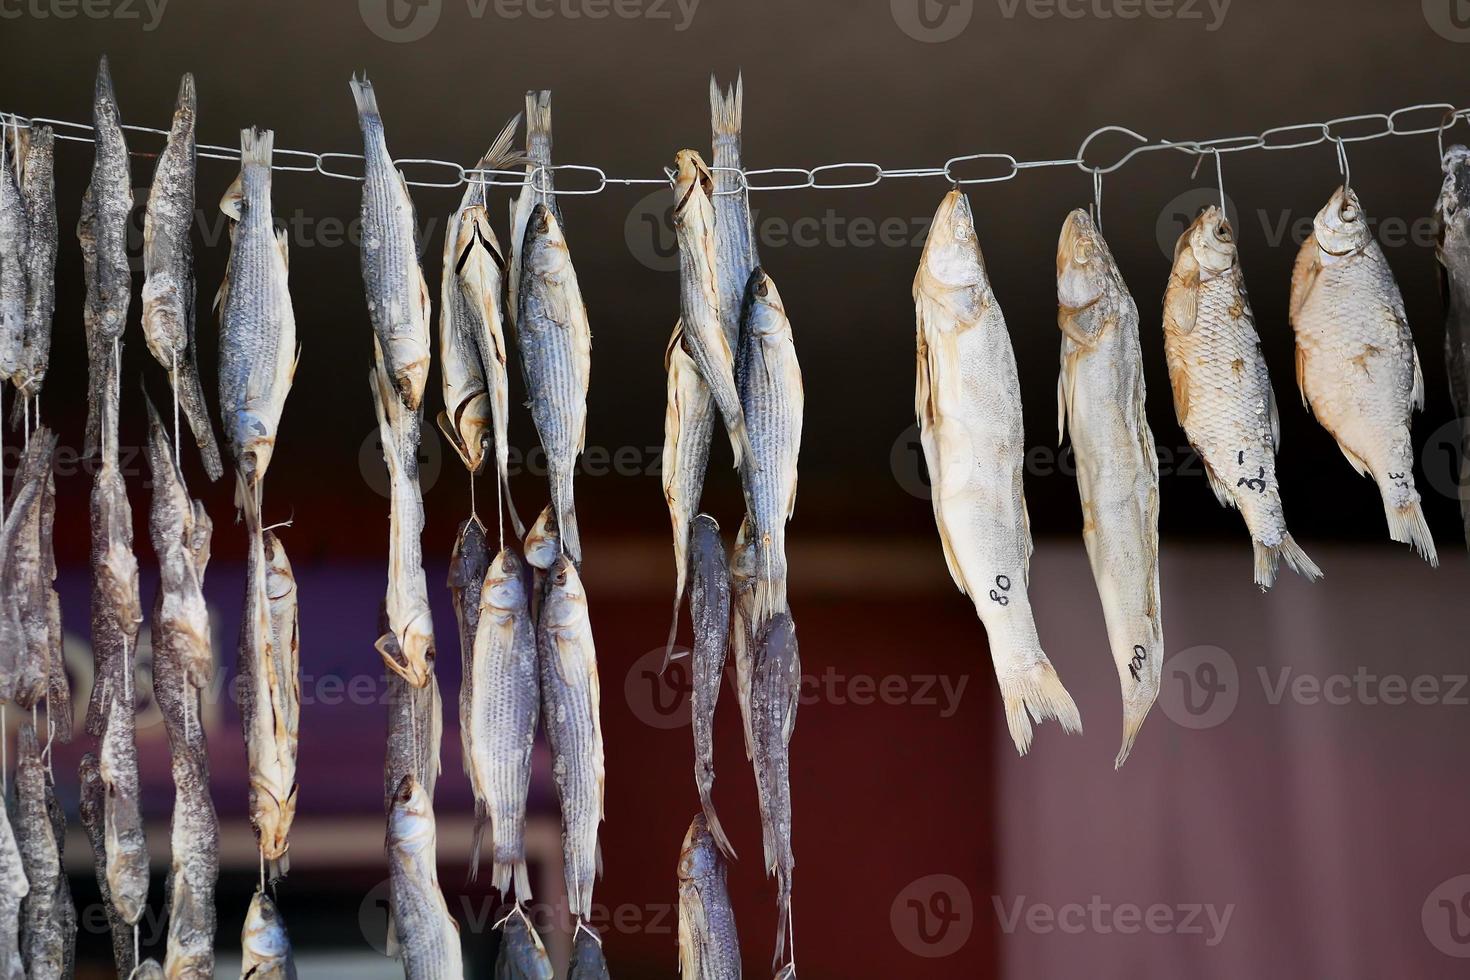 torkning av små, saltade fiskar på ett snöre foto